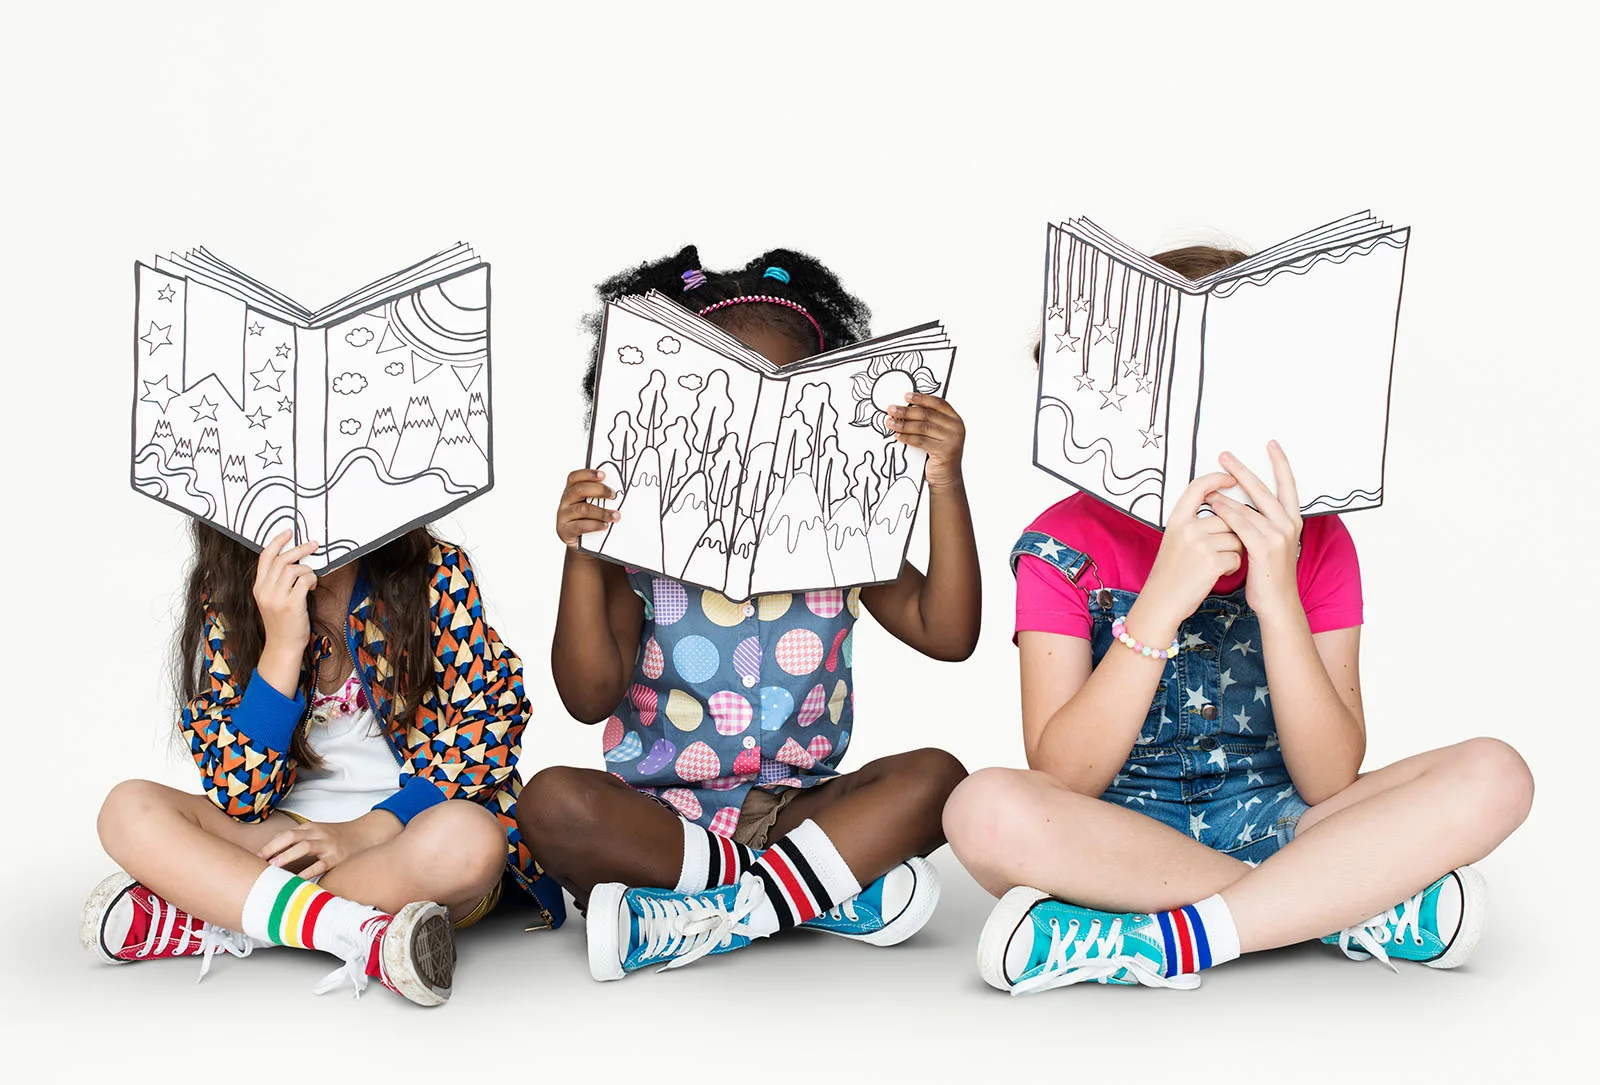 Drei Kinder sitzen auf dem Boden und halten Bücher hoch, die wie Zeichnungen aussehen